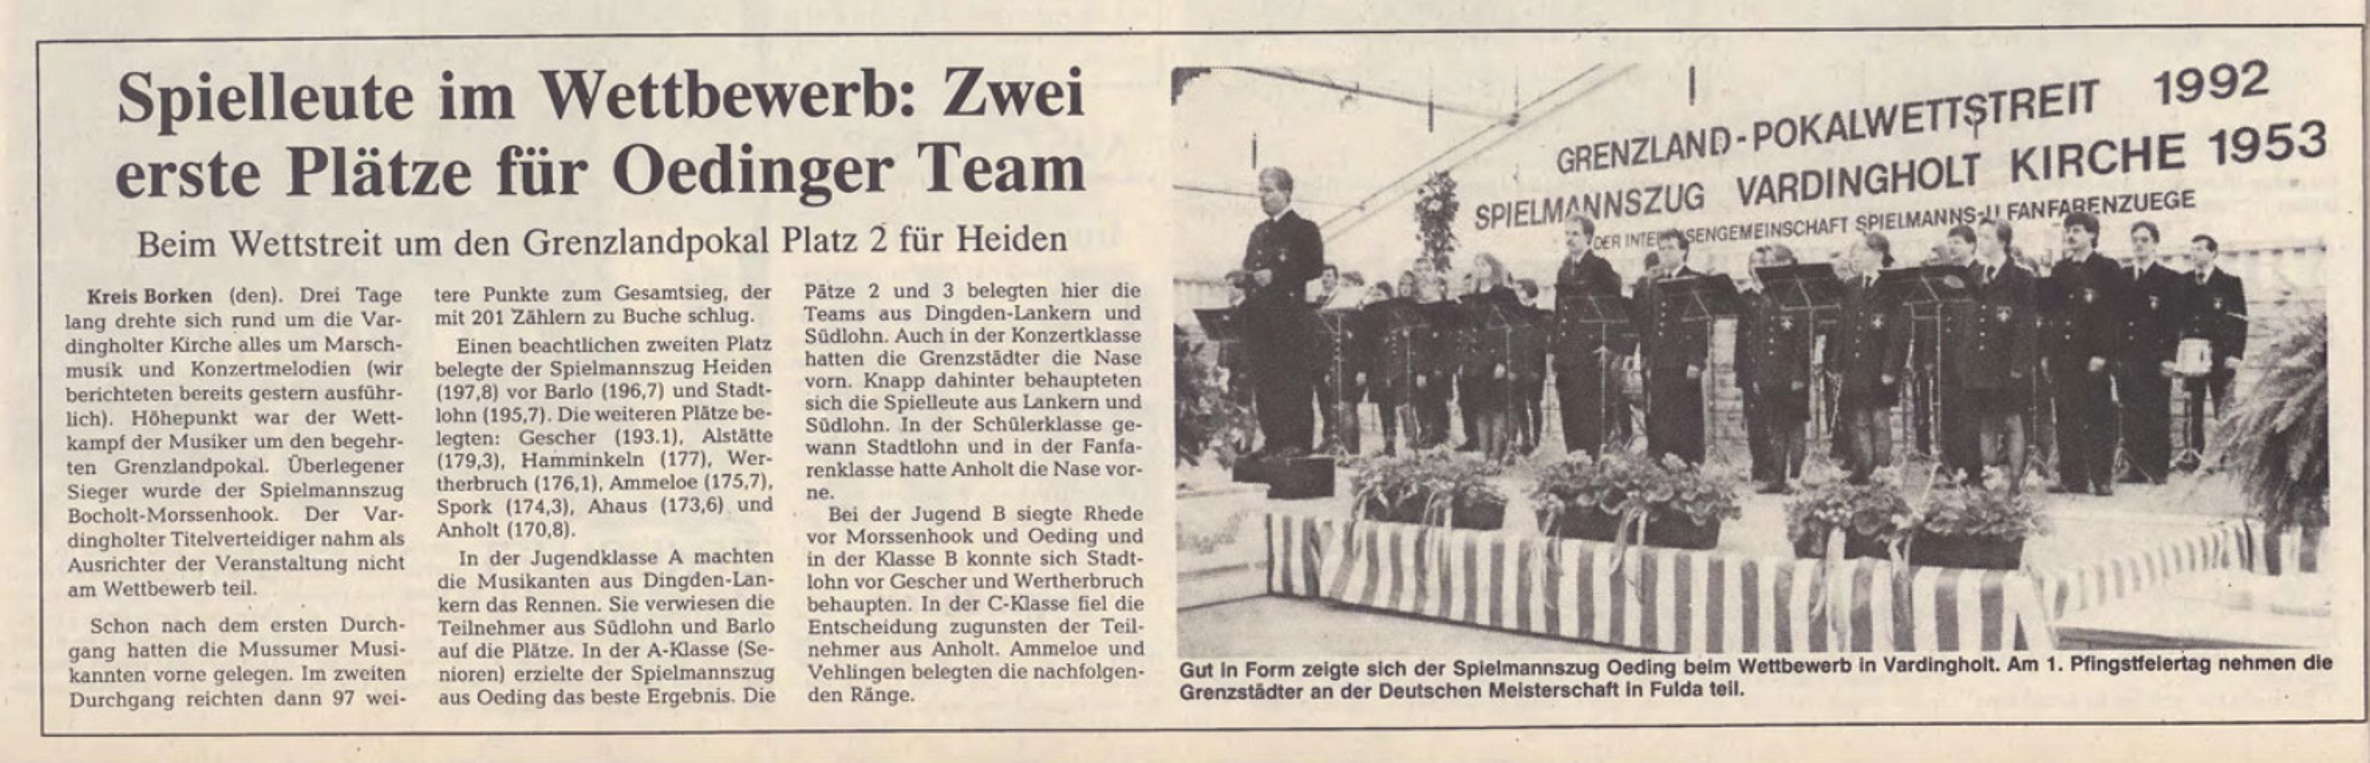 Spielleute im Wettbewerb: Zwei erste Plätze für Oedinger Team | Grenzlandwettstreit 1992